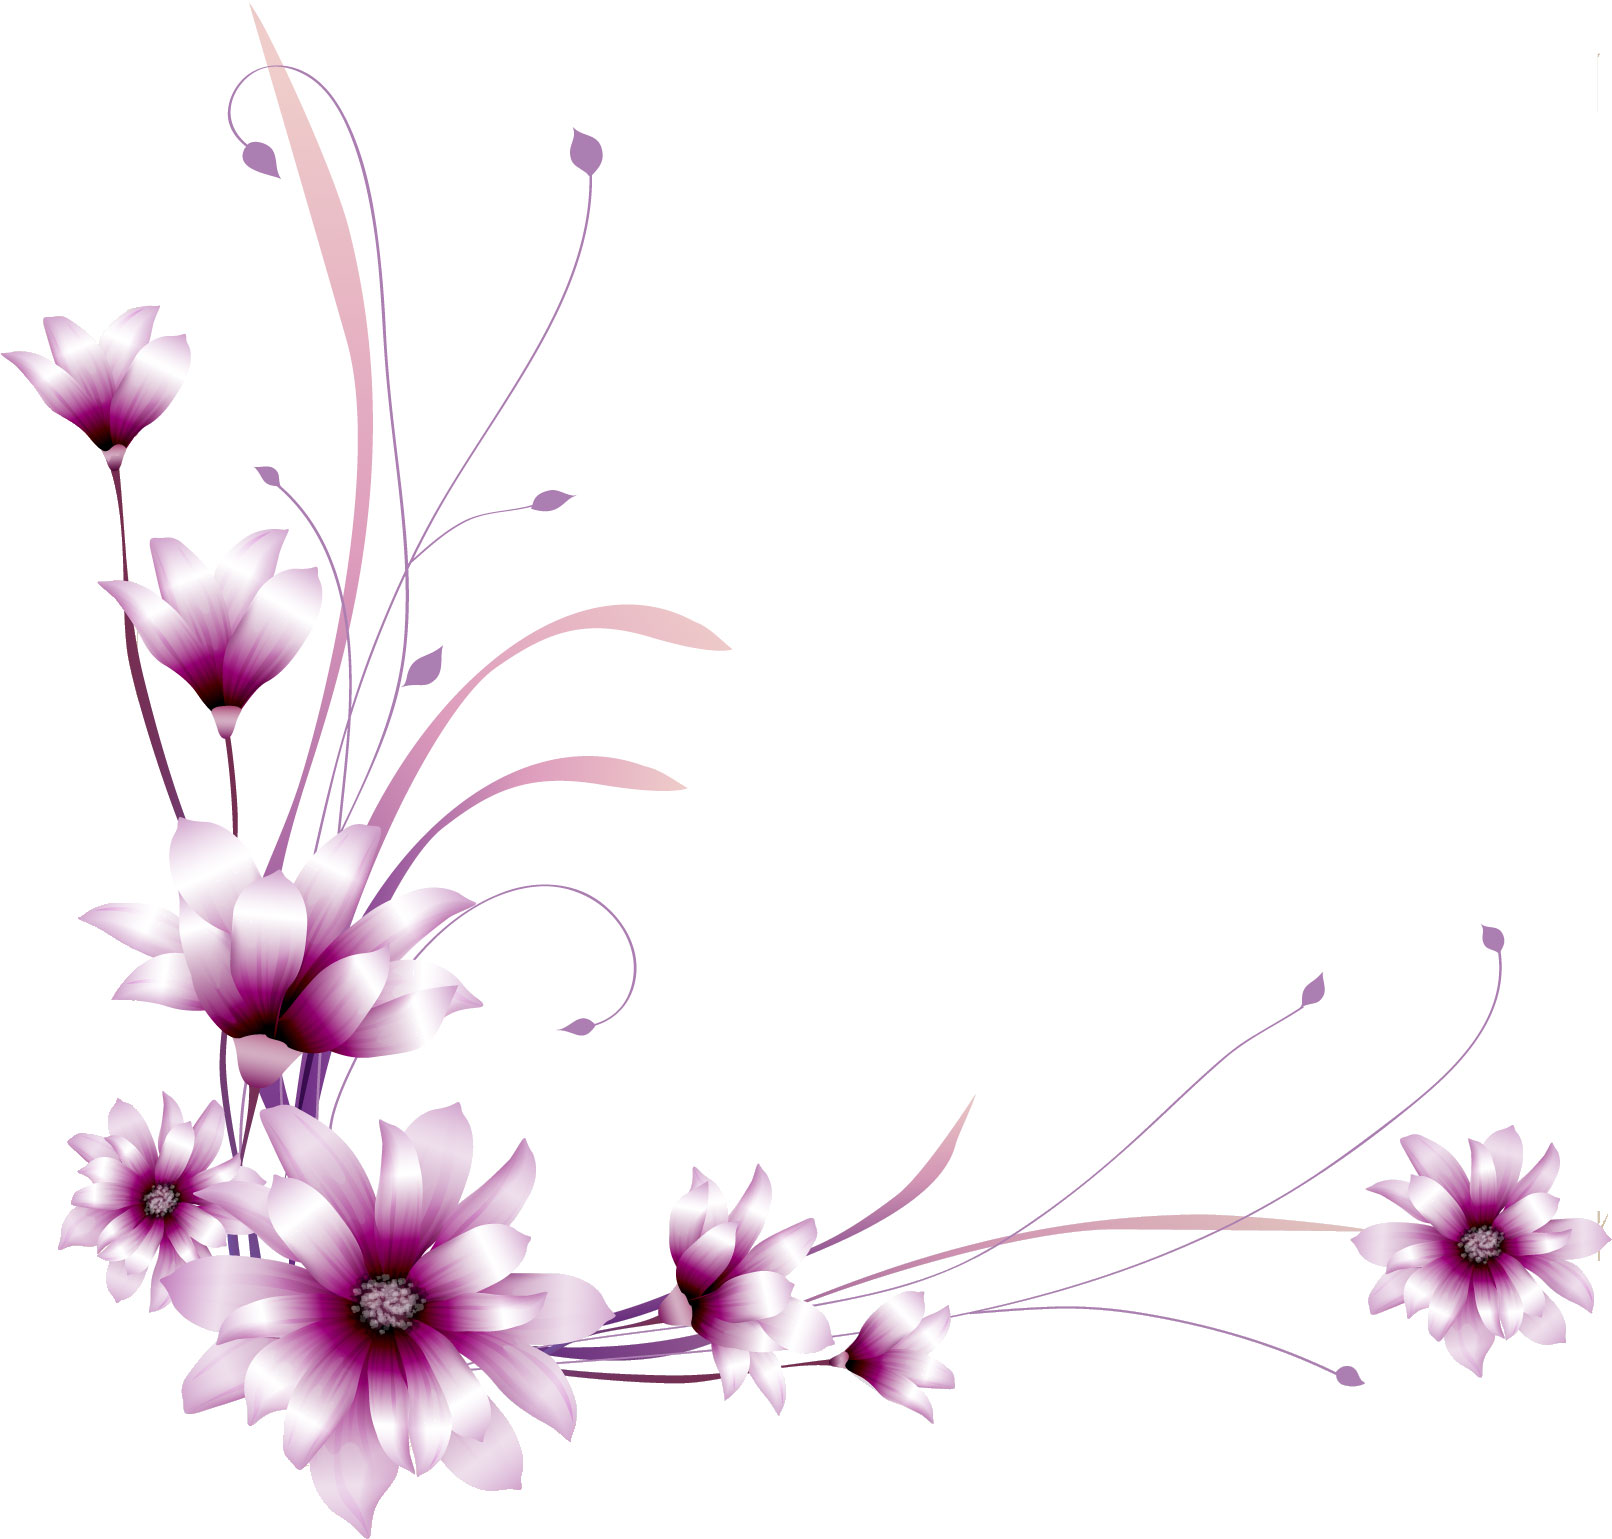 紫色の花のイラスト フリー素材 No 363 紫 光沢